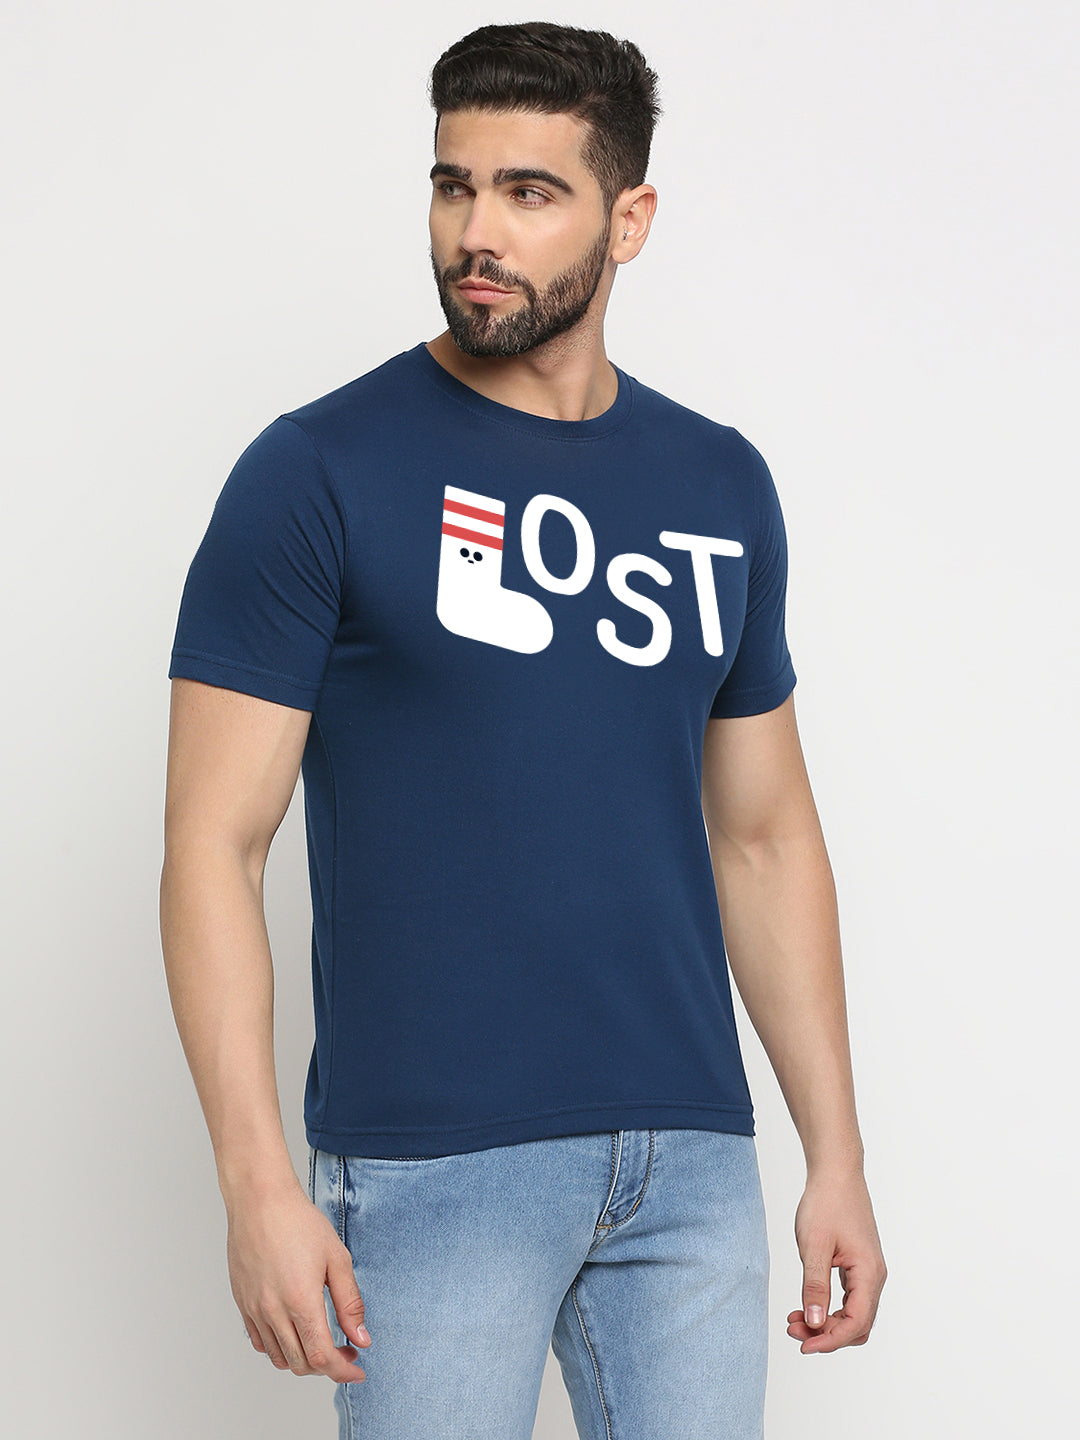 Lost Socks T-Shirt